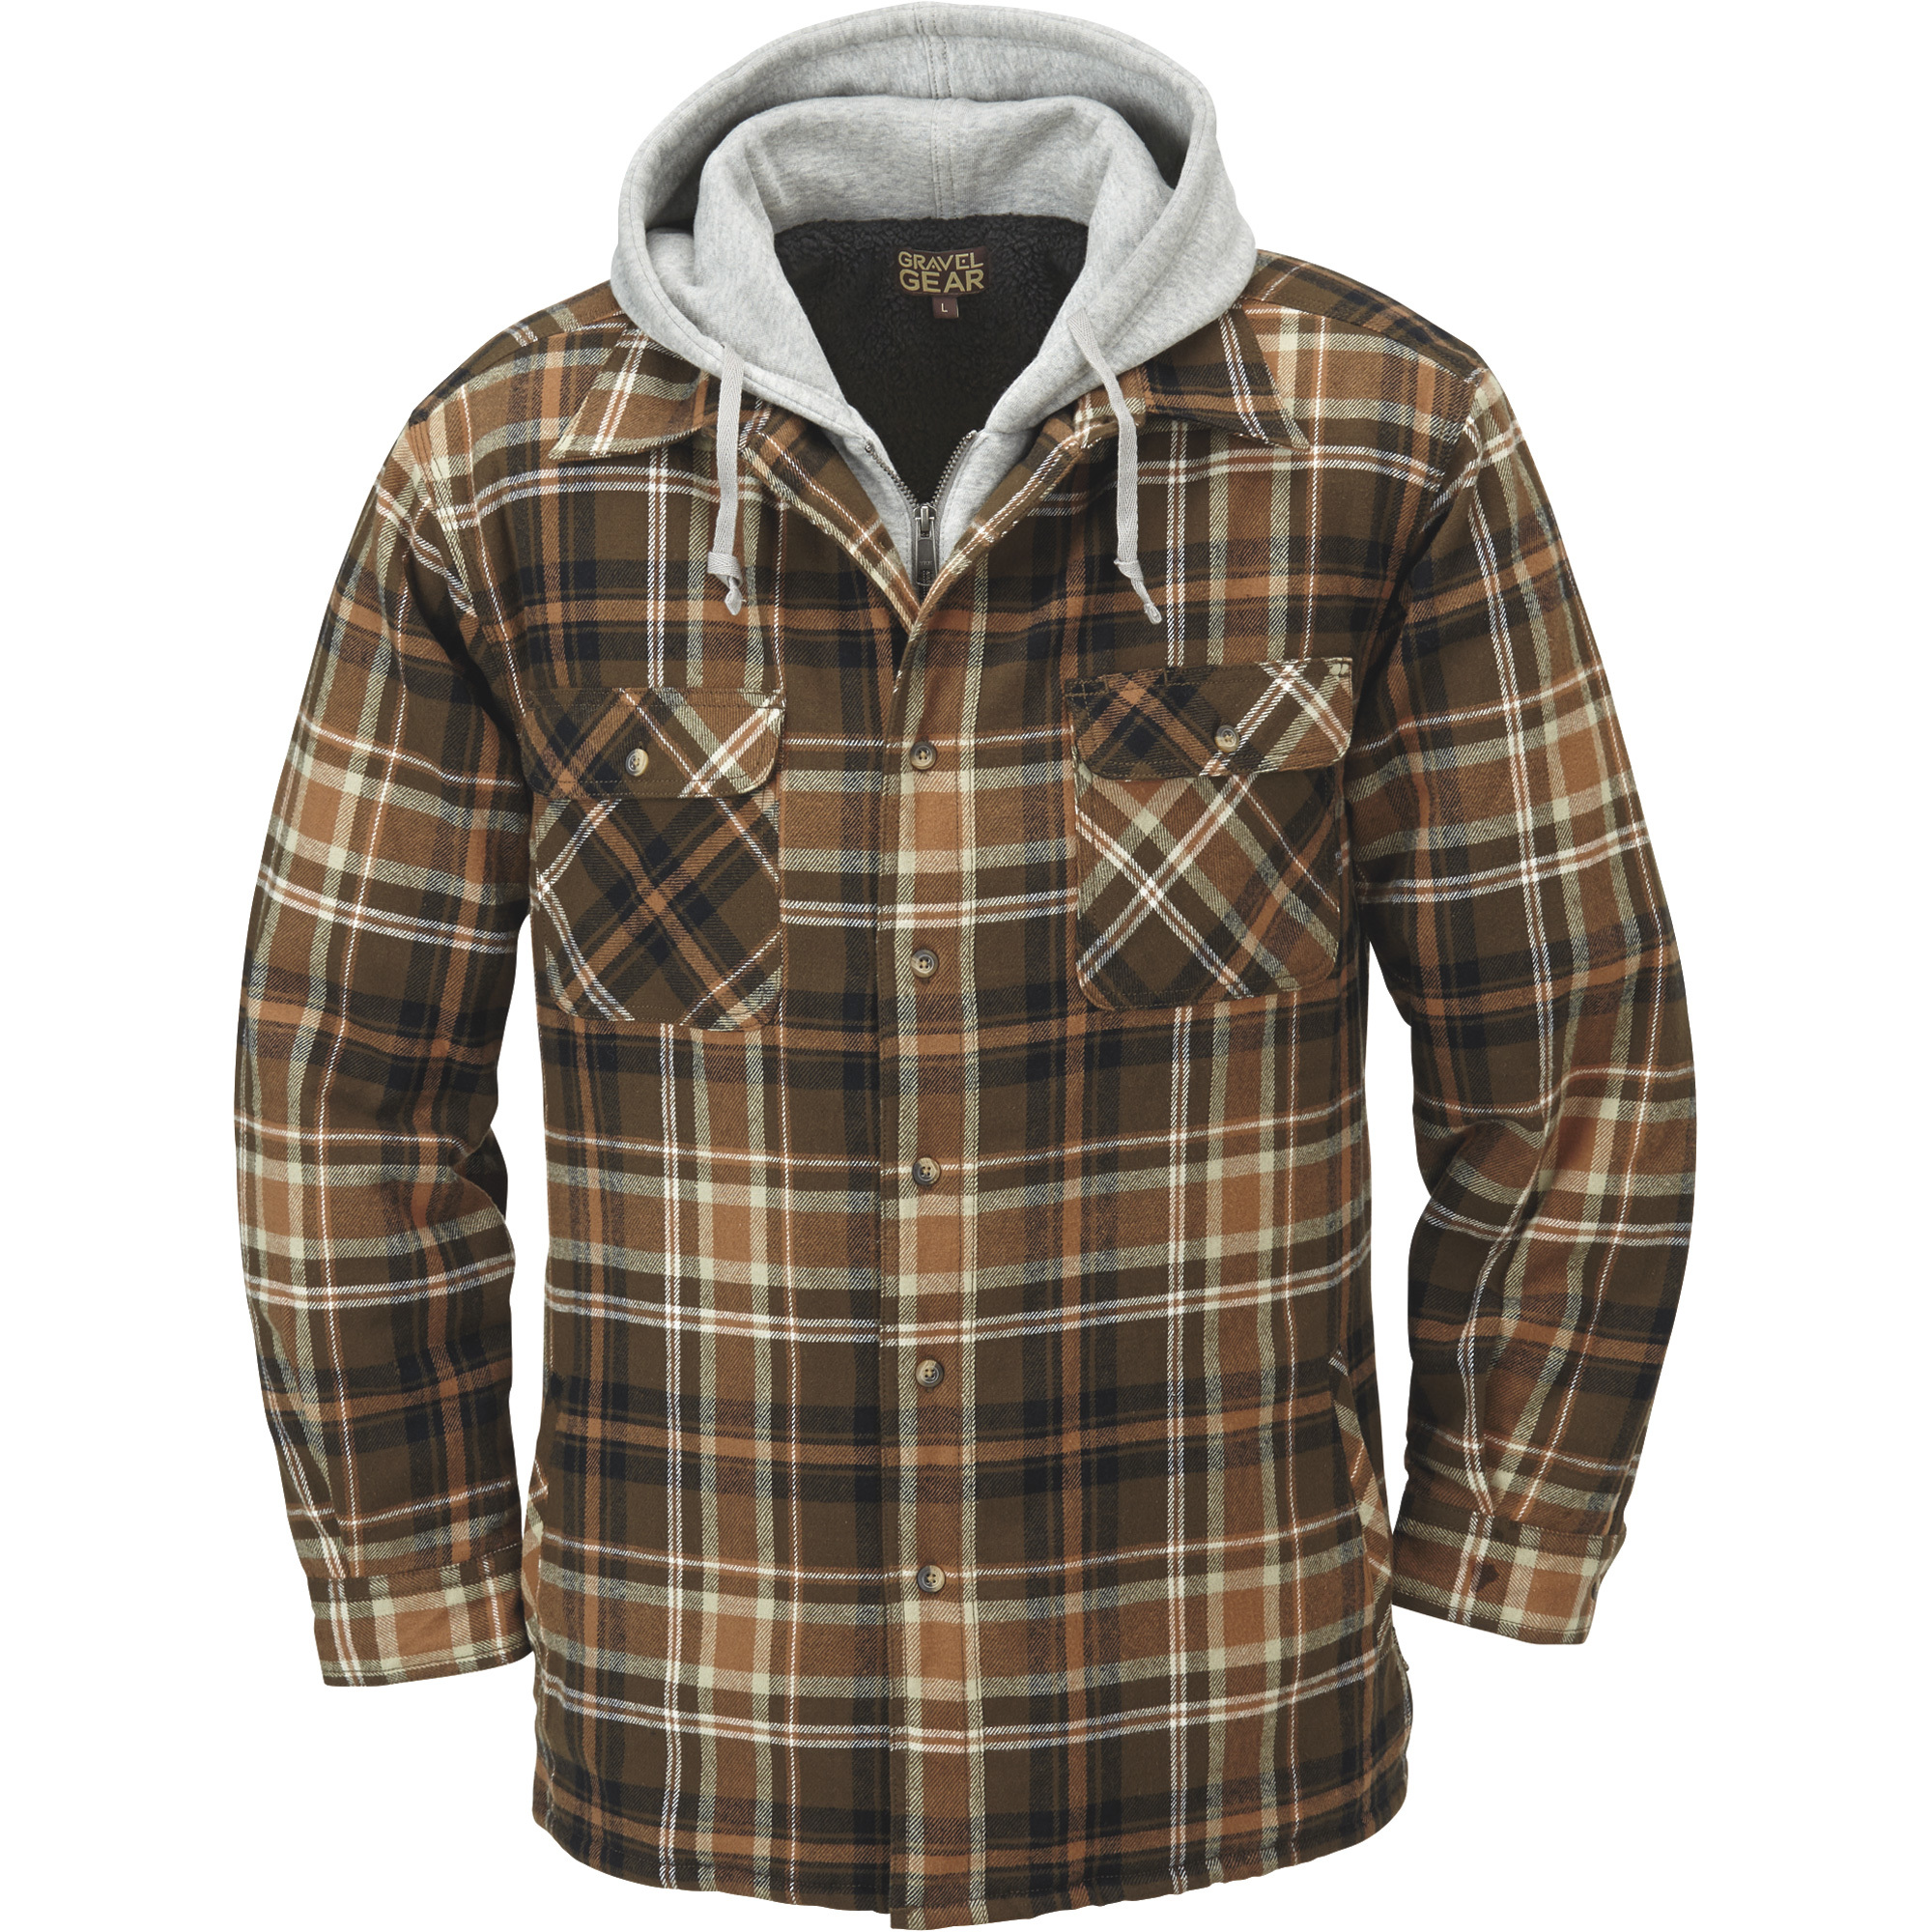 Gravel Gear Sherpa-Lined Hooded Flannel Shirt Jacket â XL, Tan